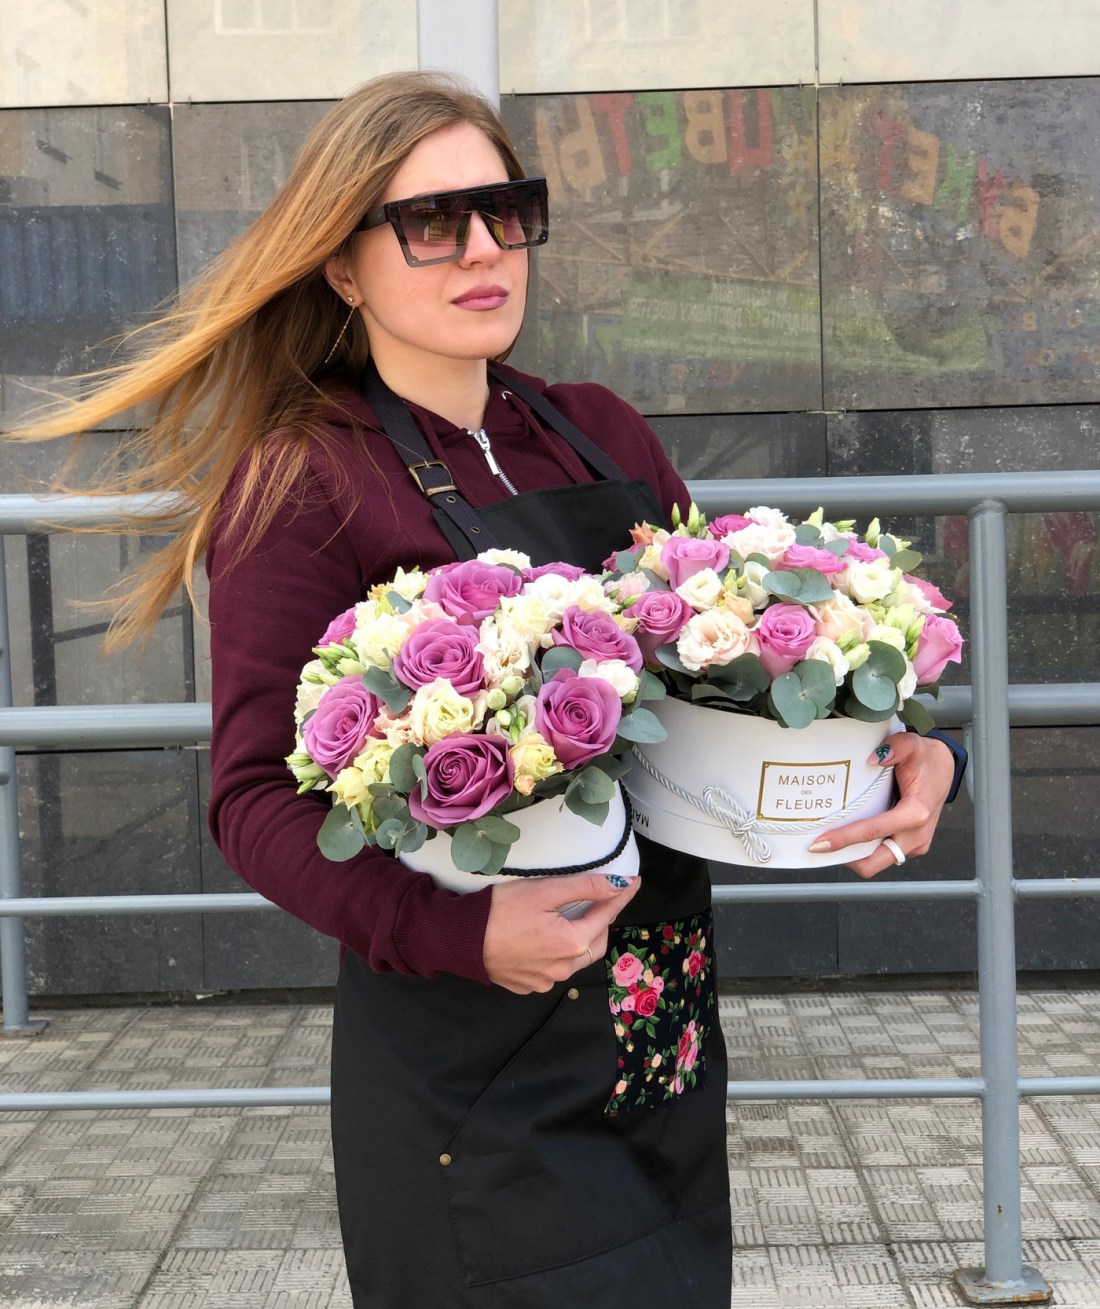 Доставка и продажа цветов В Минске